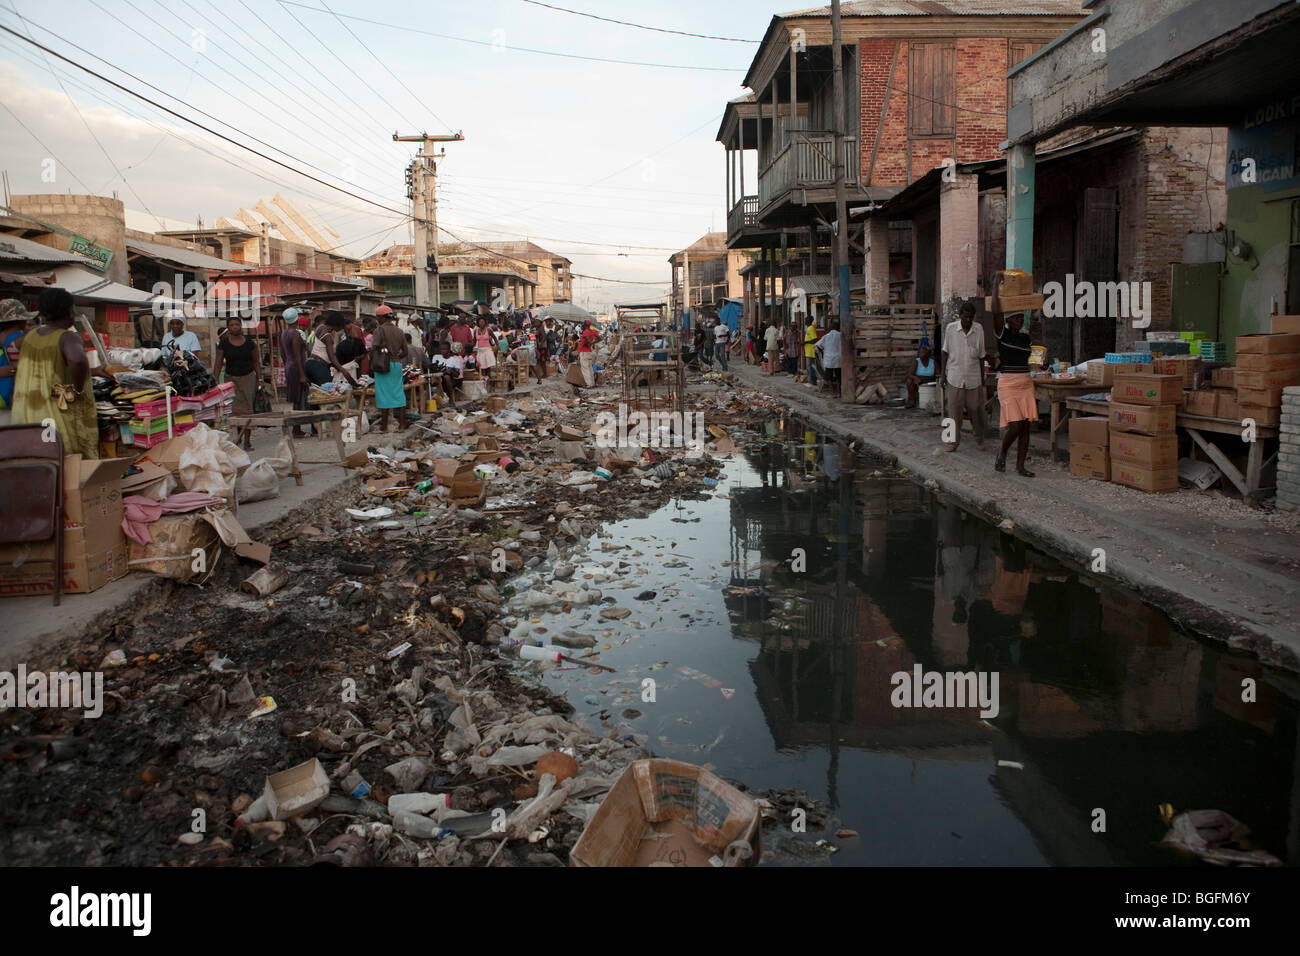 Straßenszene in Gonaives, Abteilung Artibonite, Haiti, zeigt eine unvollständige Entwässerungskanal mit Müll gefüllt. Stockfoto